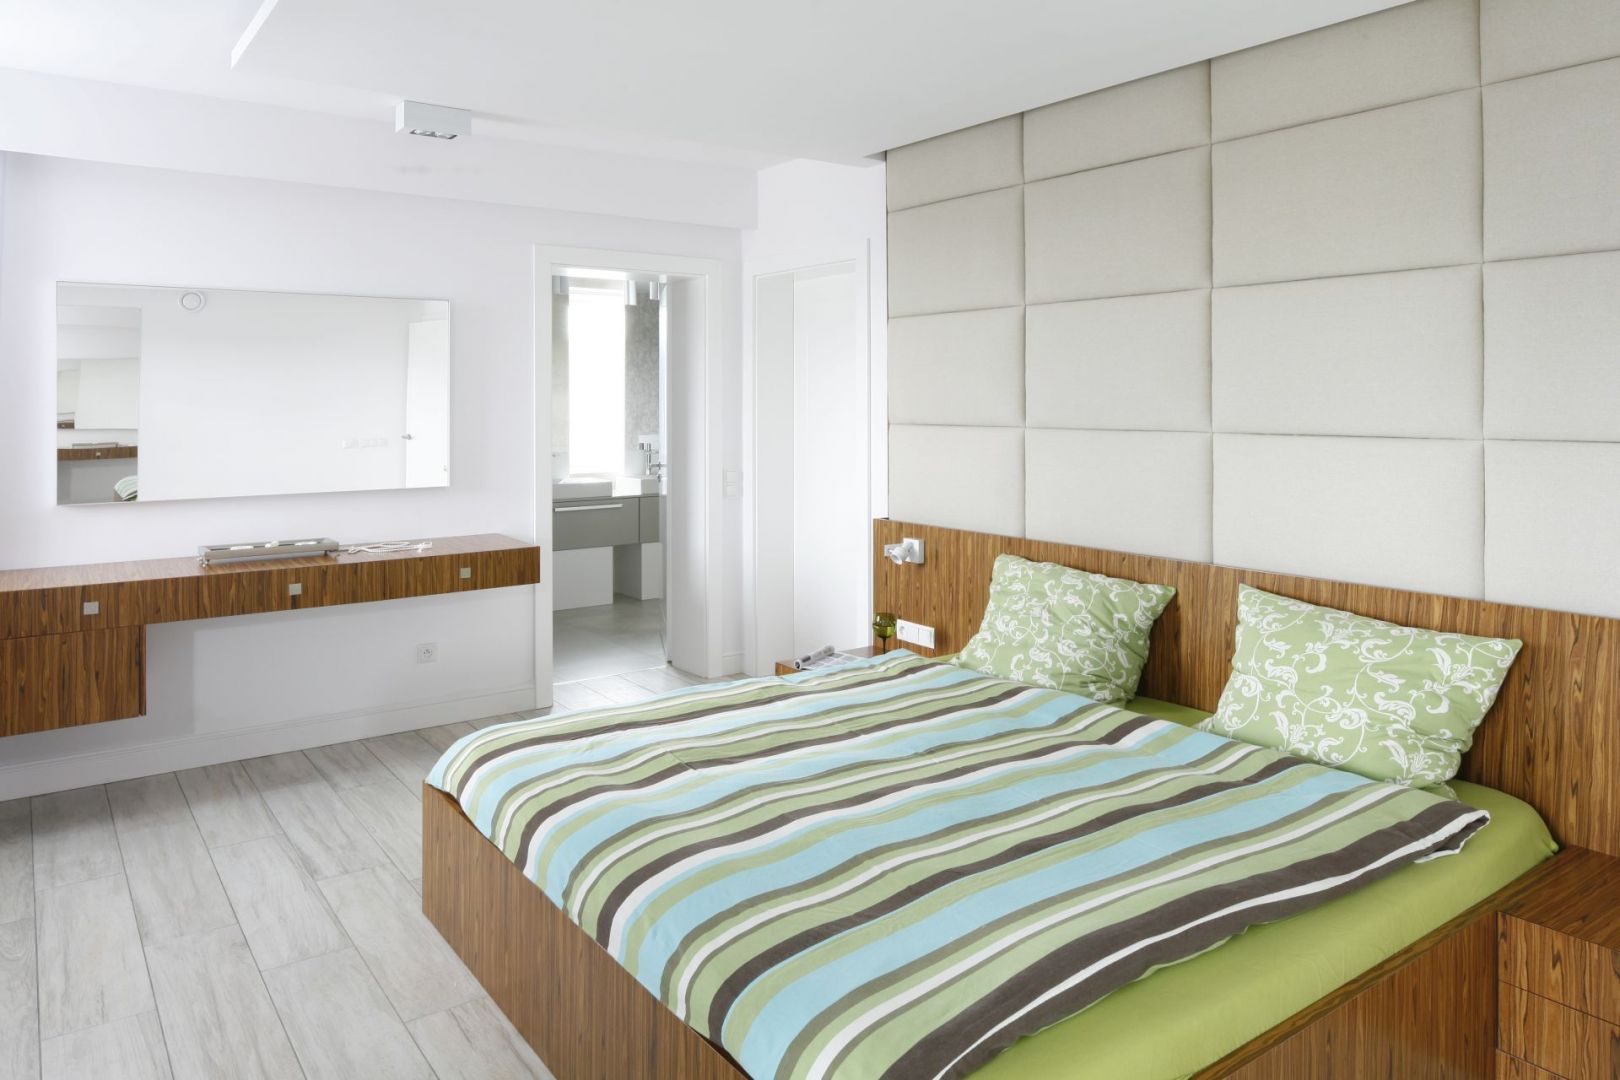 Ściana za łóżkiem wykończona miękkimi panelami w tkaninie sprawi, że sypialnia stanie się przytulnym miejscem. Projekt Dominik Respondek. Fot. Bartosz Jarosz